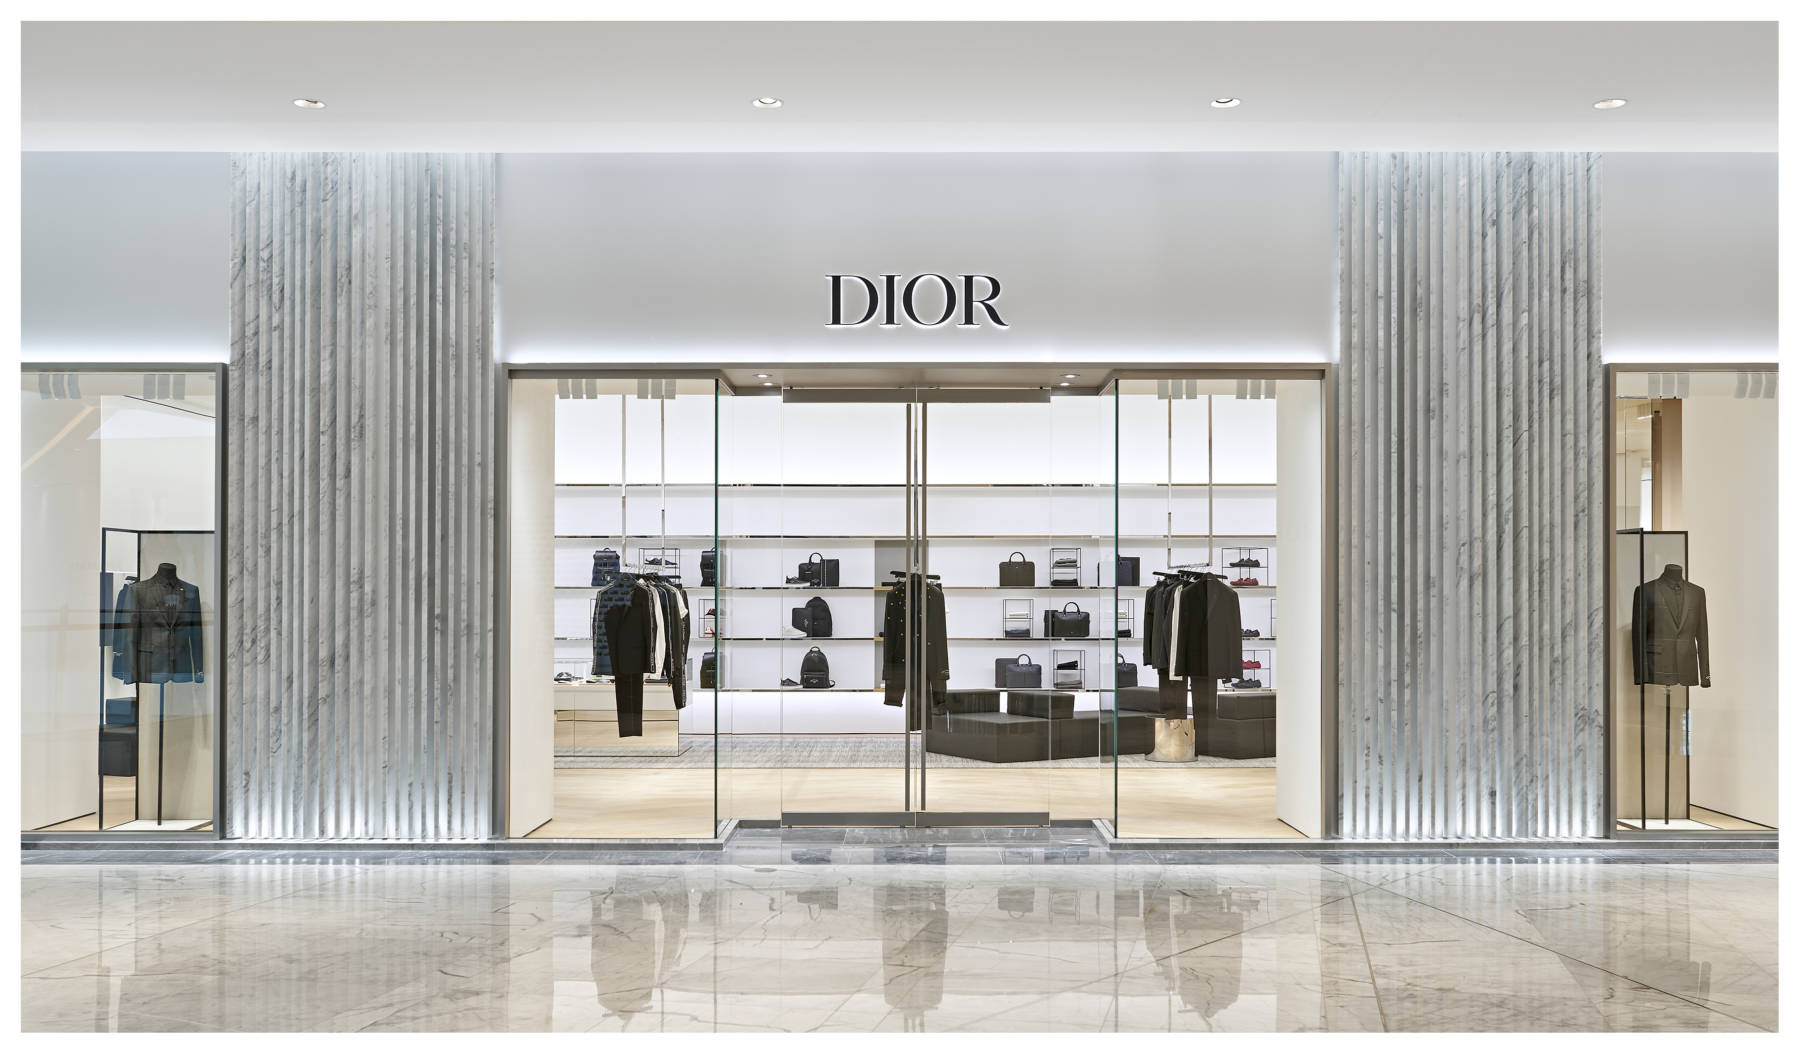 Dior façade concept — Barthélémy Griño